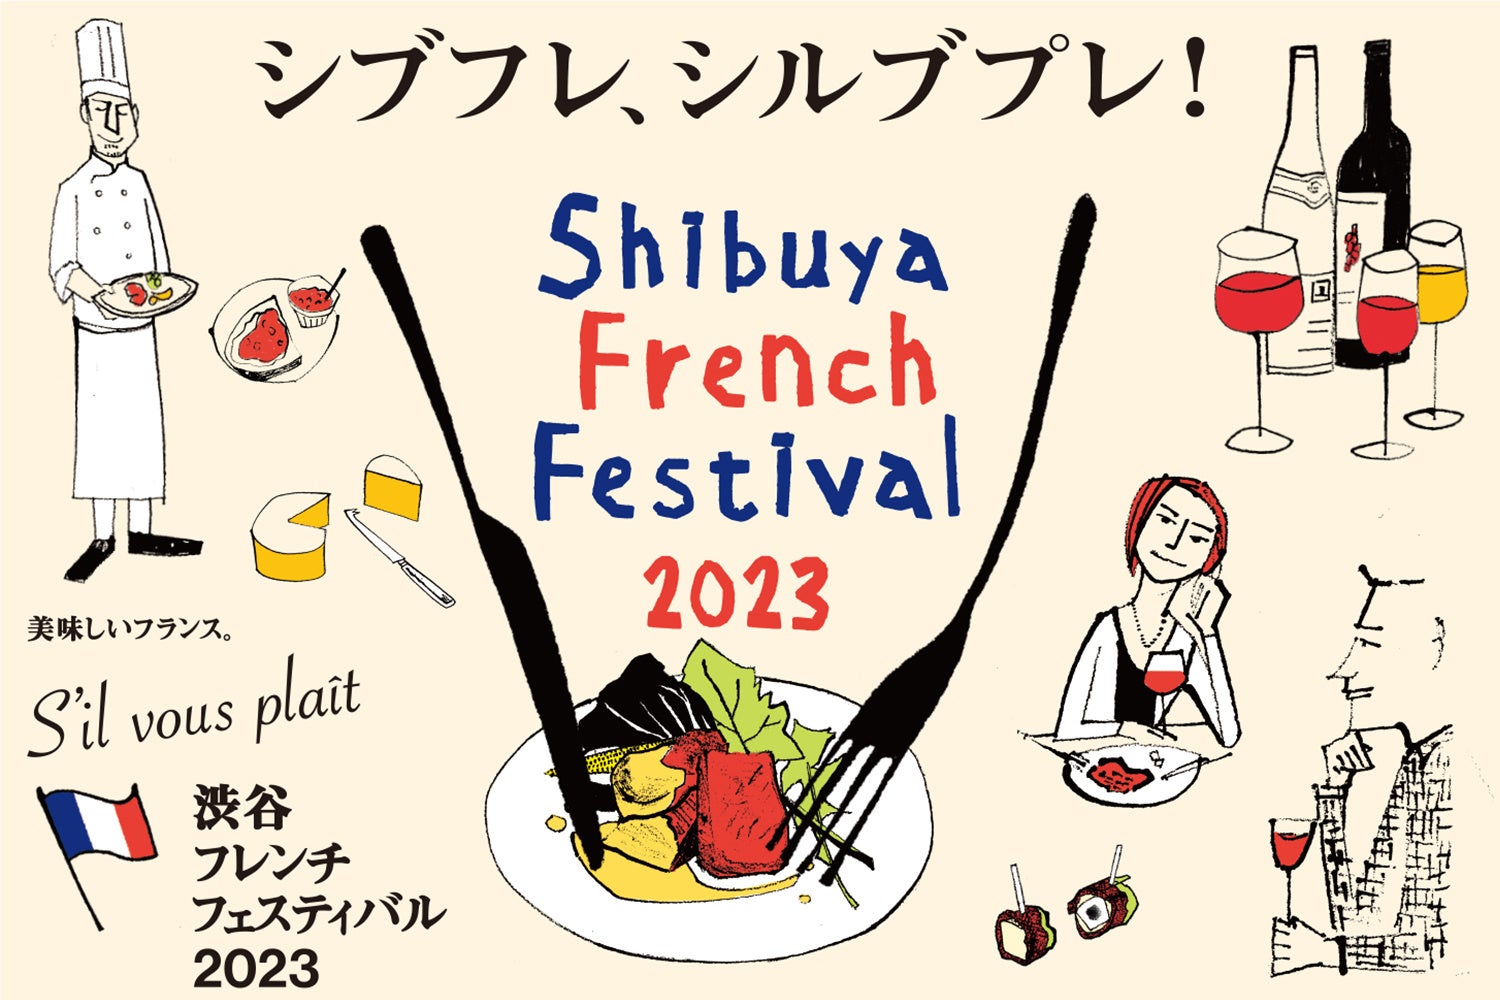 シブフレ・シルブプレ！渋谷フレンチフェスティバル2023